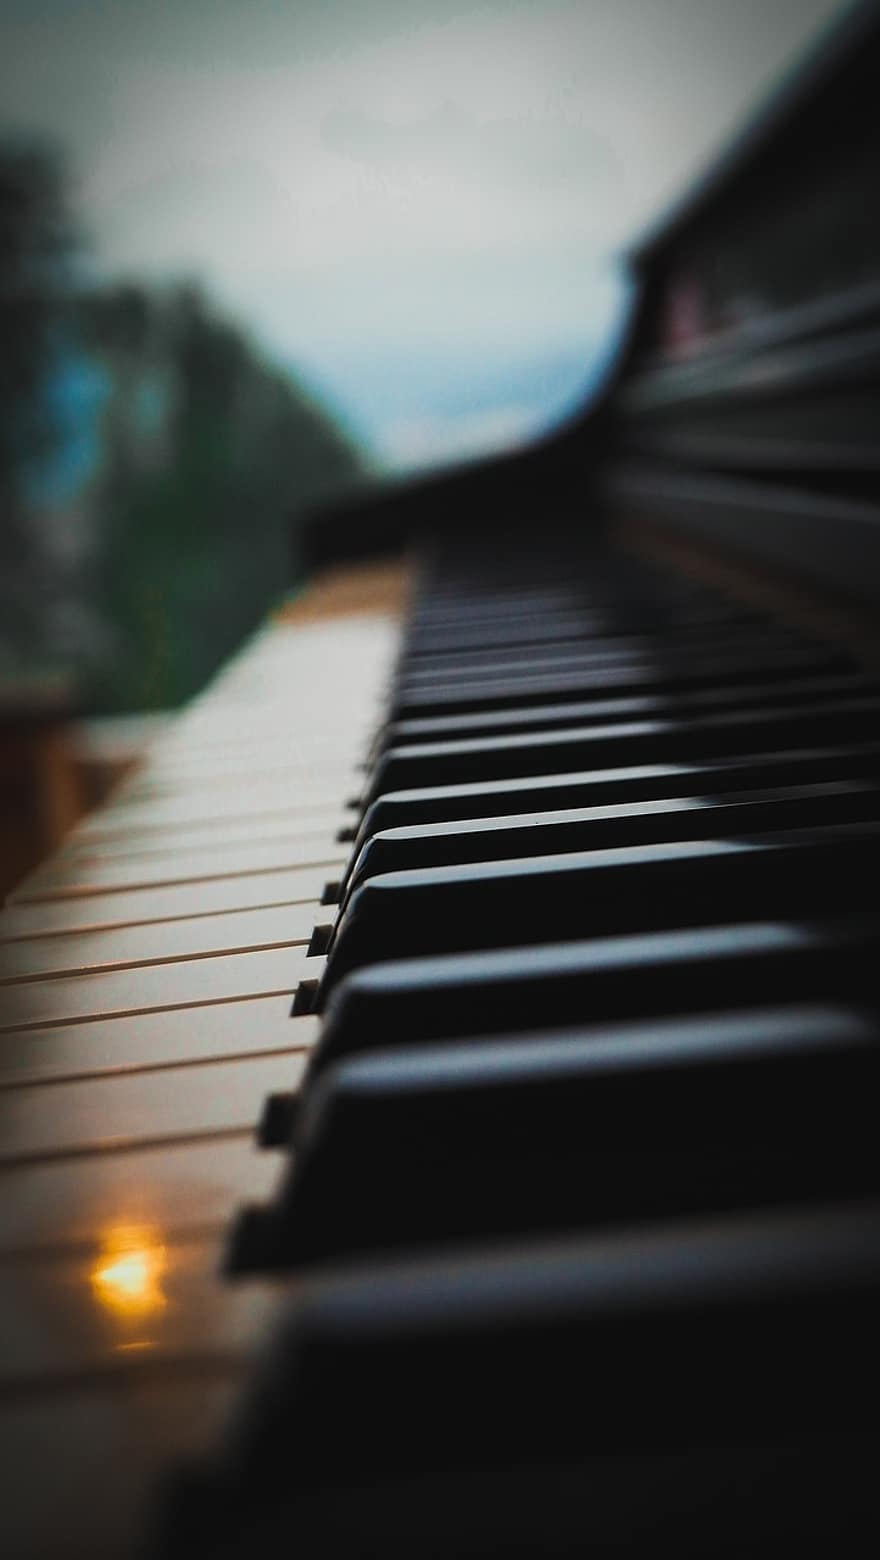 fortepian, Natura, ścieśniać, muzyka, instrument muzyczny, klawisz fortepianu, muzyk, zbliżenie, uczenie się, praktykujący, klawisz